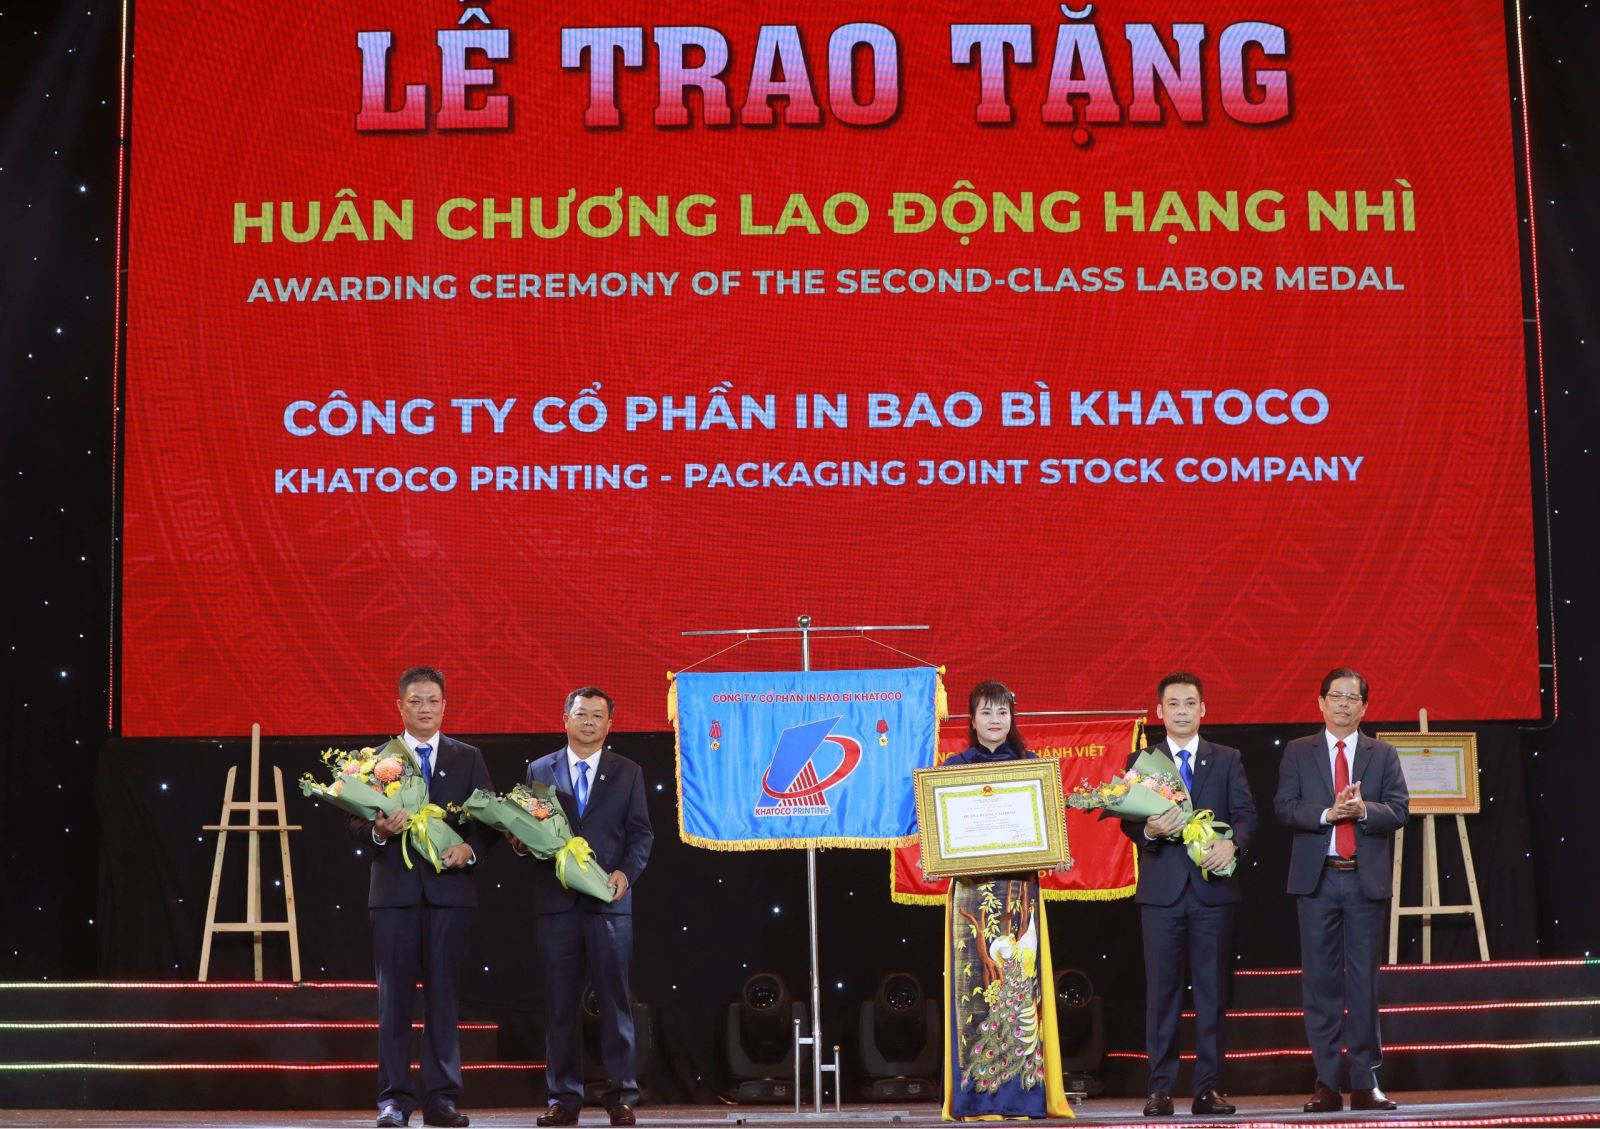 Công ty Cổ phần In Bao bì Khatoco nhận Huân chương Lao động hạng Nhì